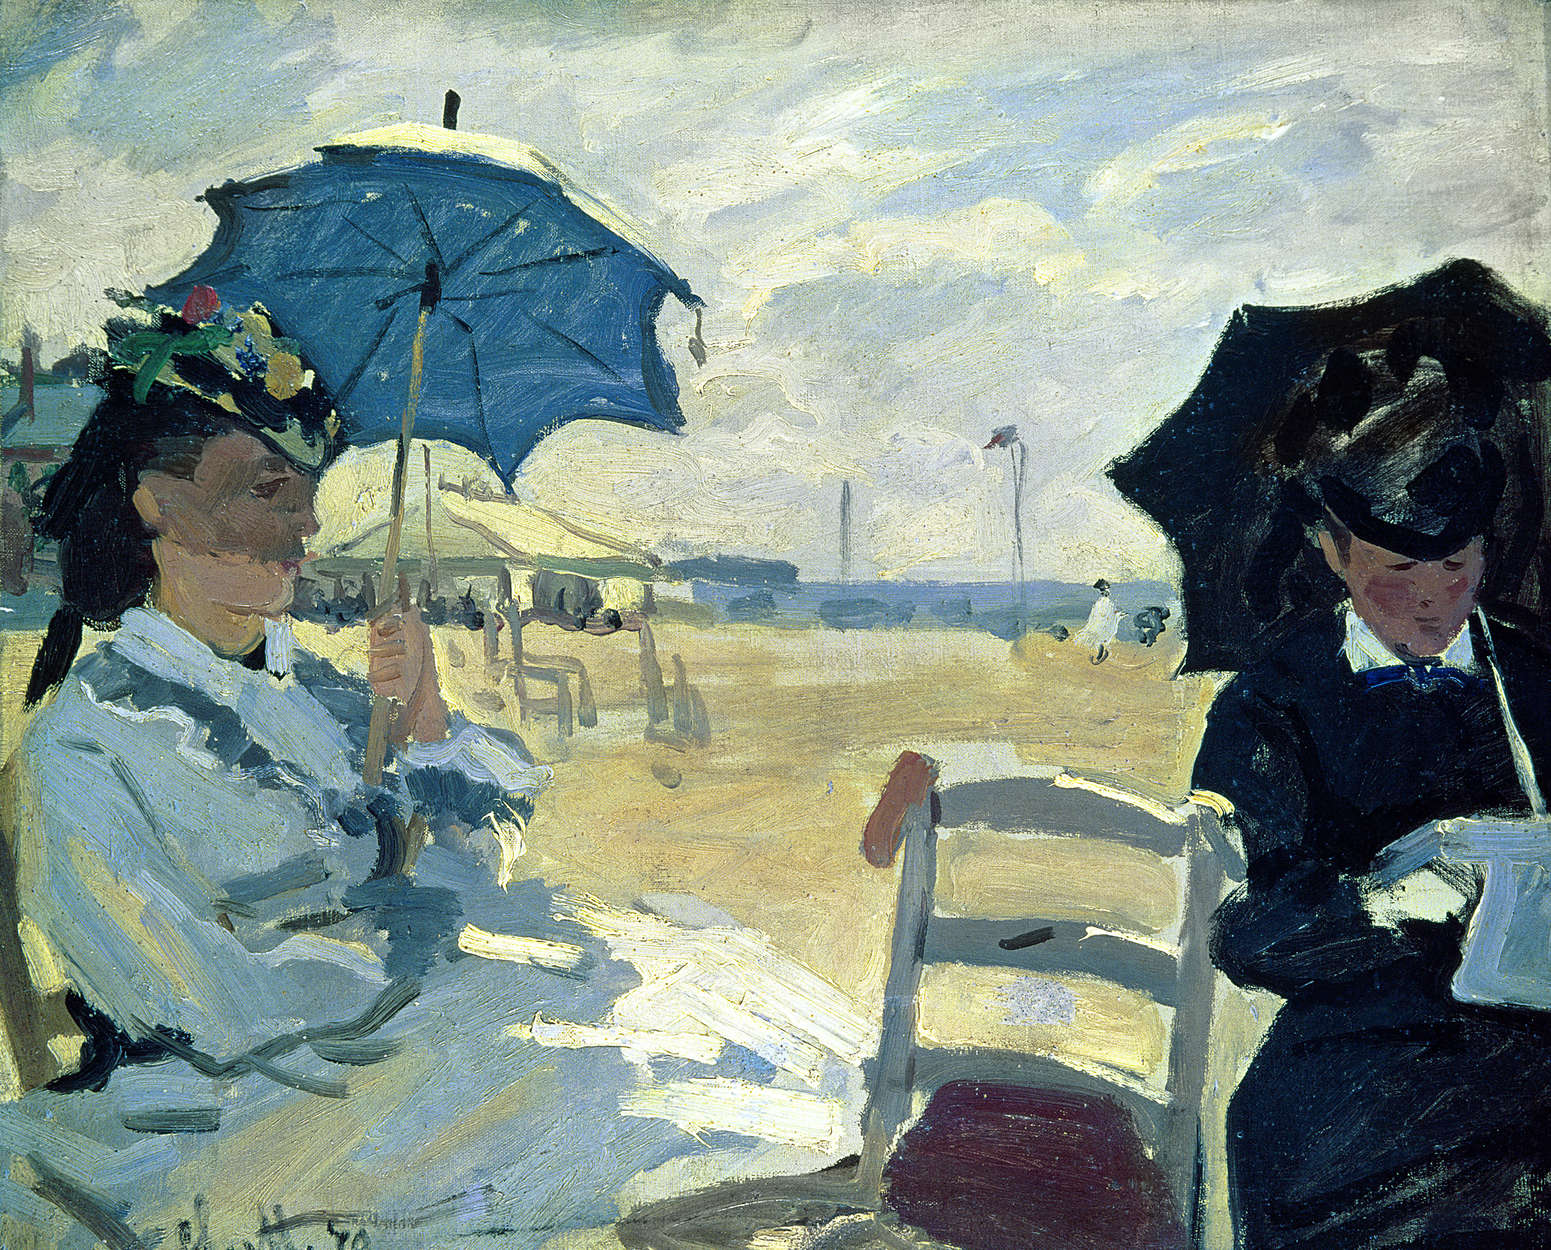             Papier peint panoramique "La plage de Trouville" de Claude Monet
        